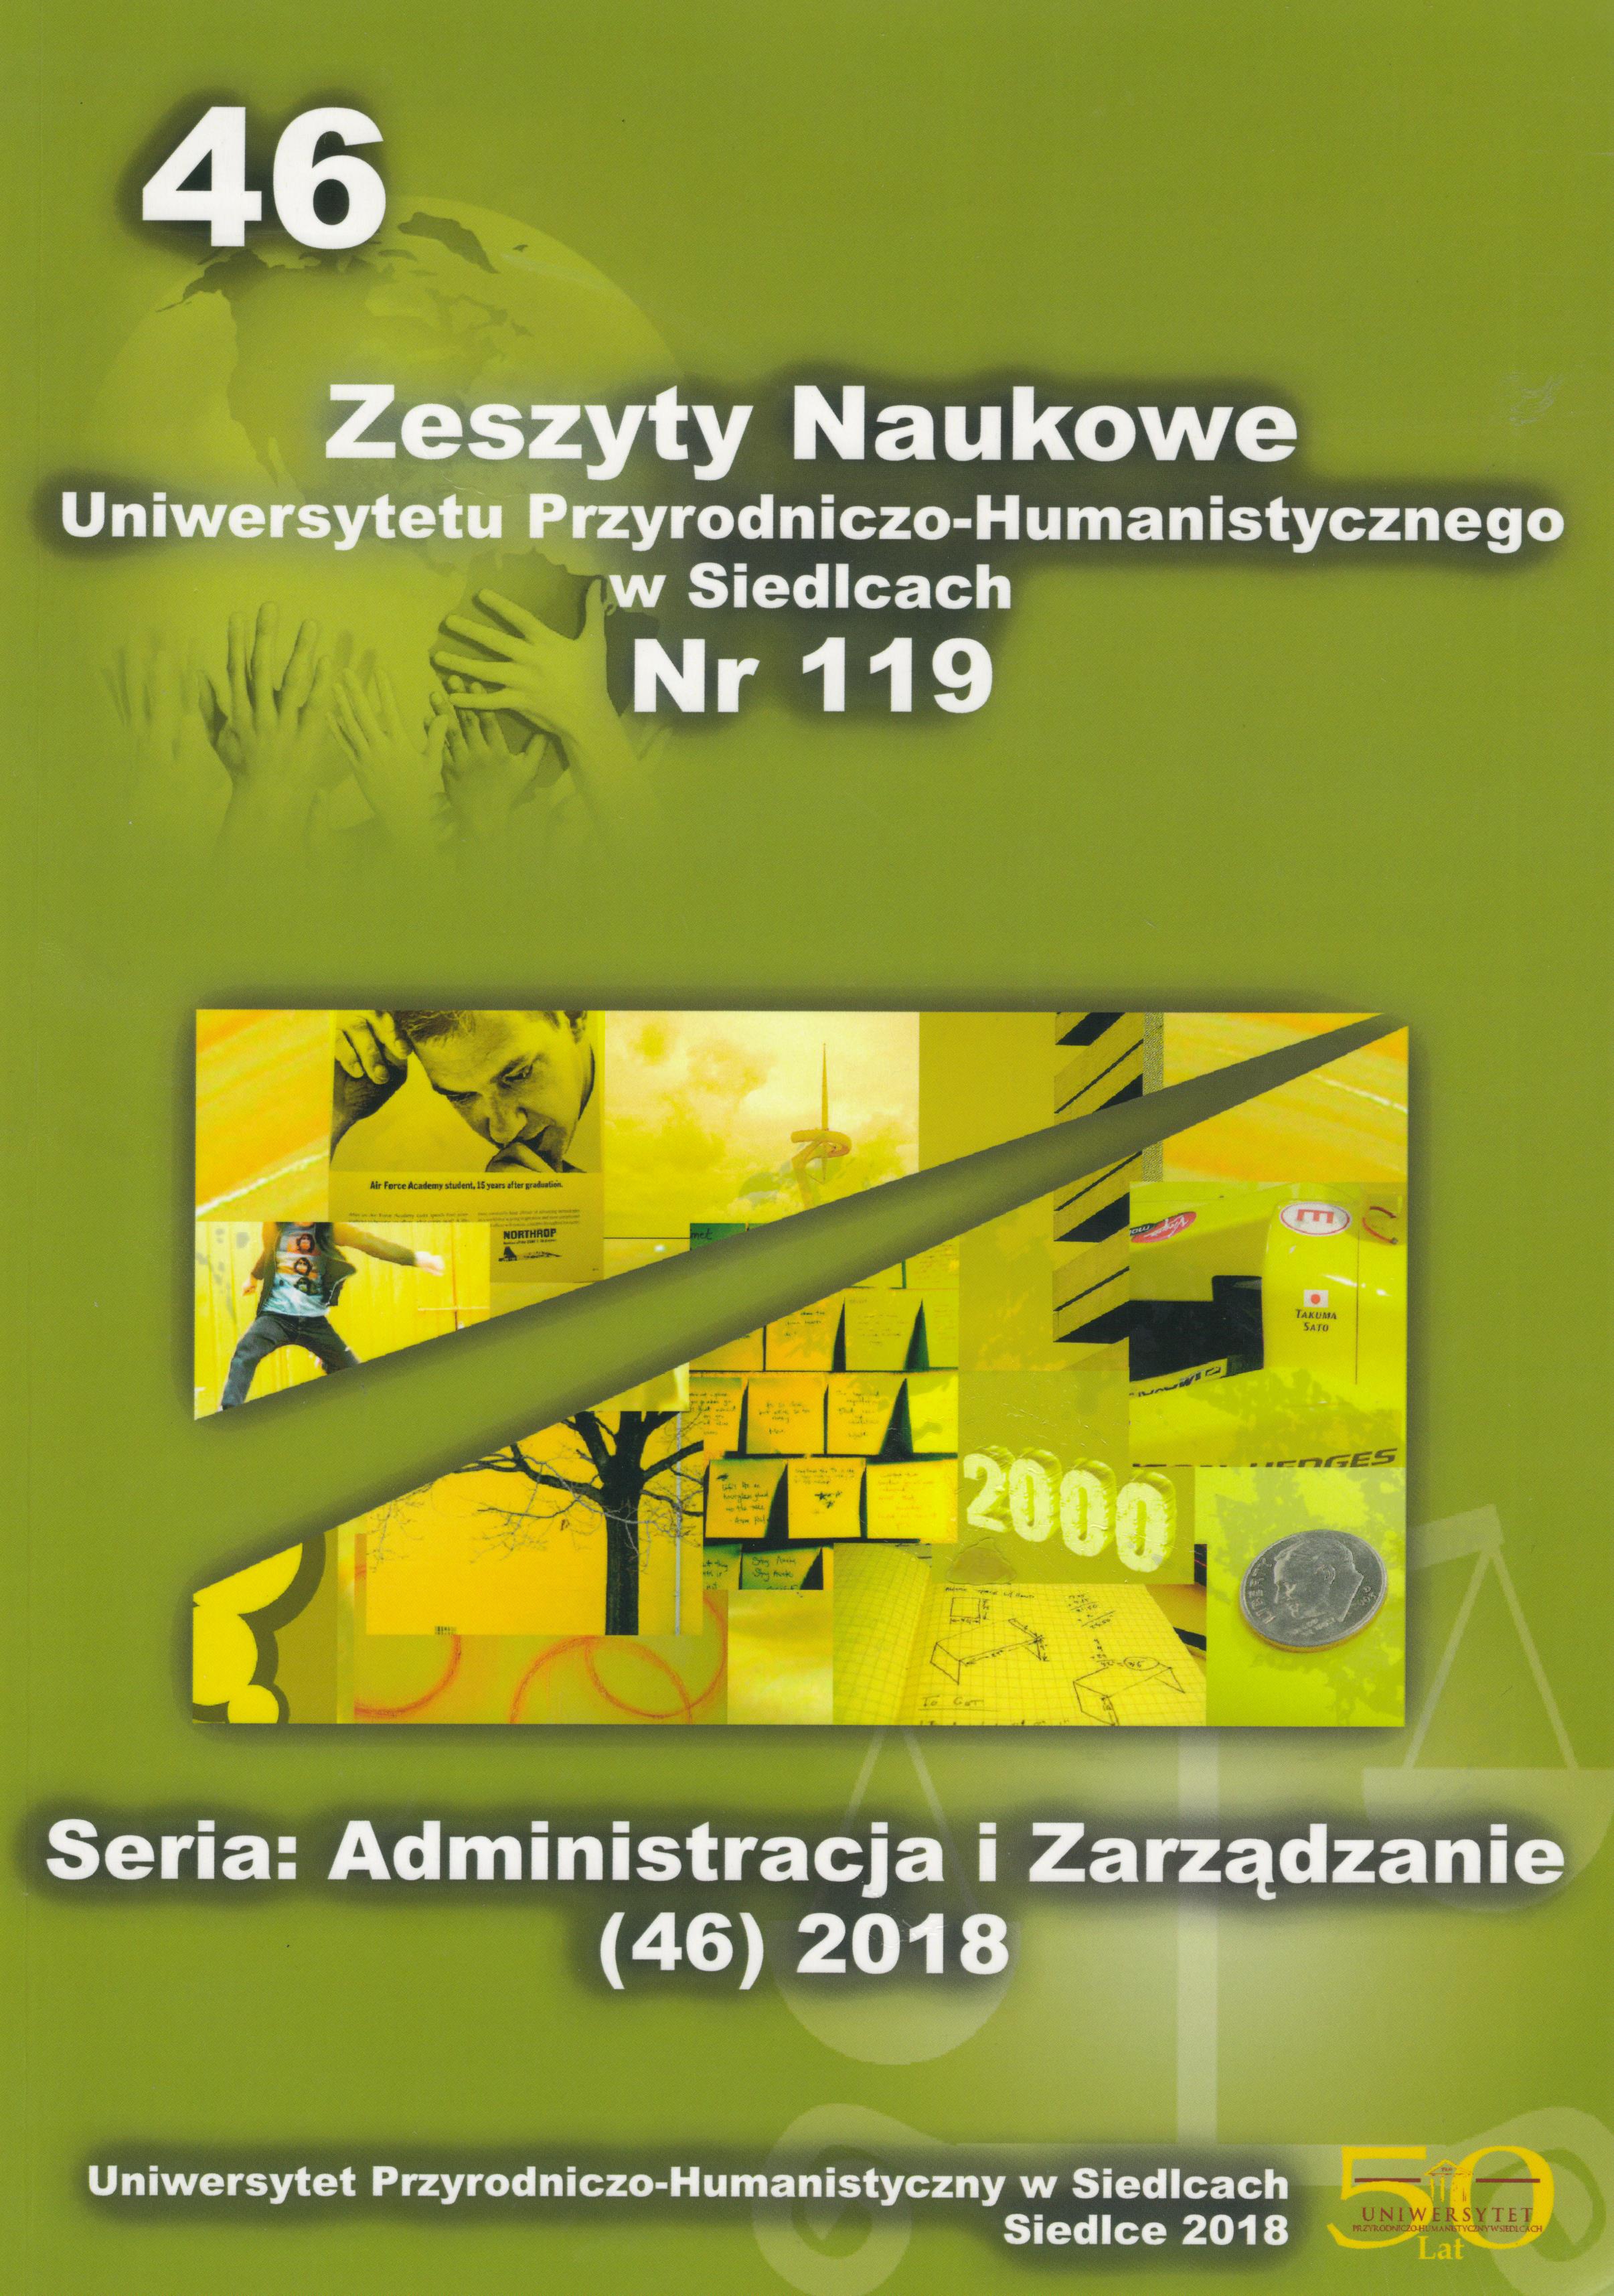 					View Vol. 46 No. 119 (2018): Zeszyty Naukowe Uniwersytetu Przyrodniczo-Humanistycznego w Siedlcach, Seria: Administracja i Zarządzanie
				